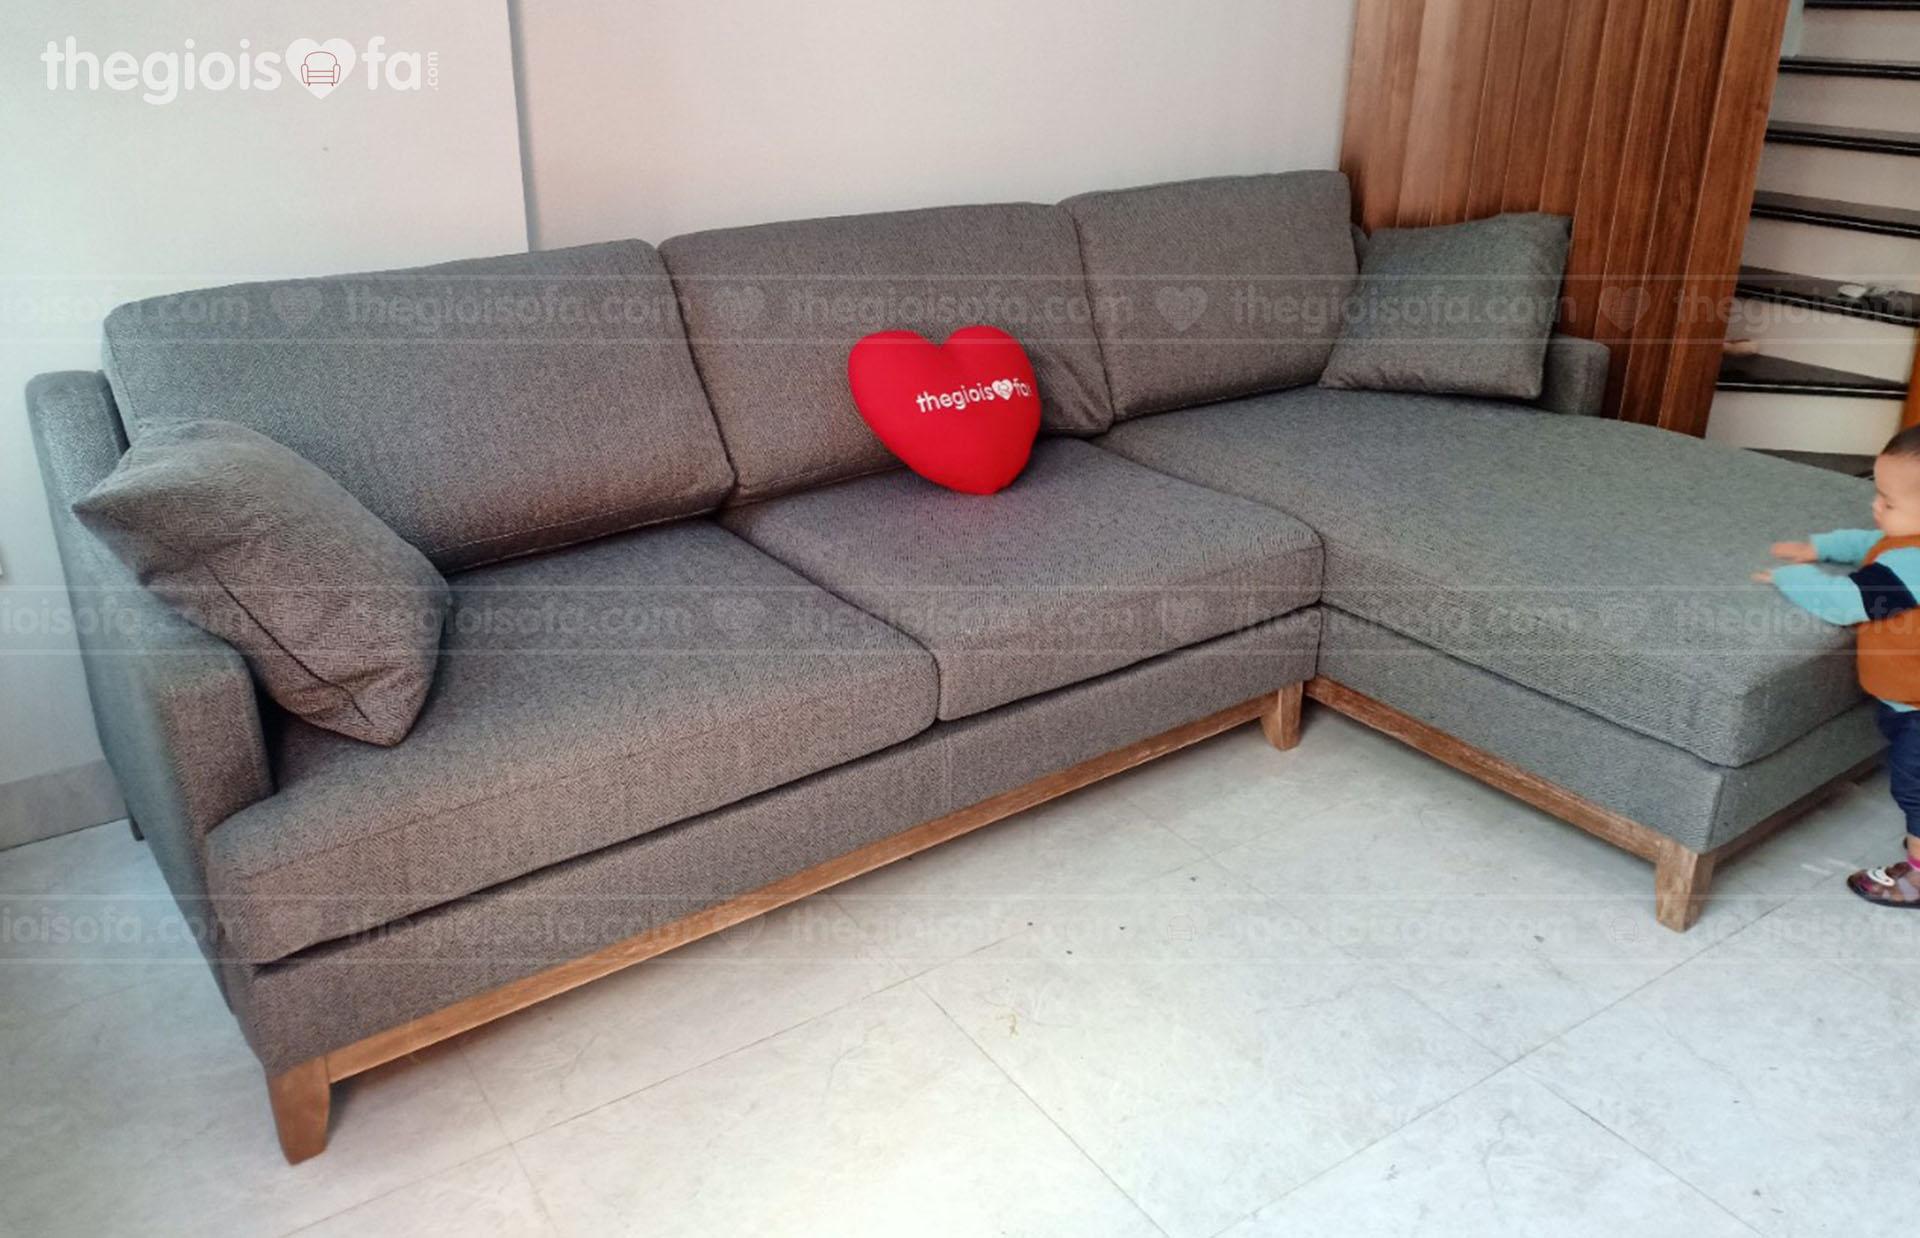 Giao hàng sofa AT10300 cho cô Hương chung cư Pháp Vân – Thanh Trì – Hà Nội